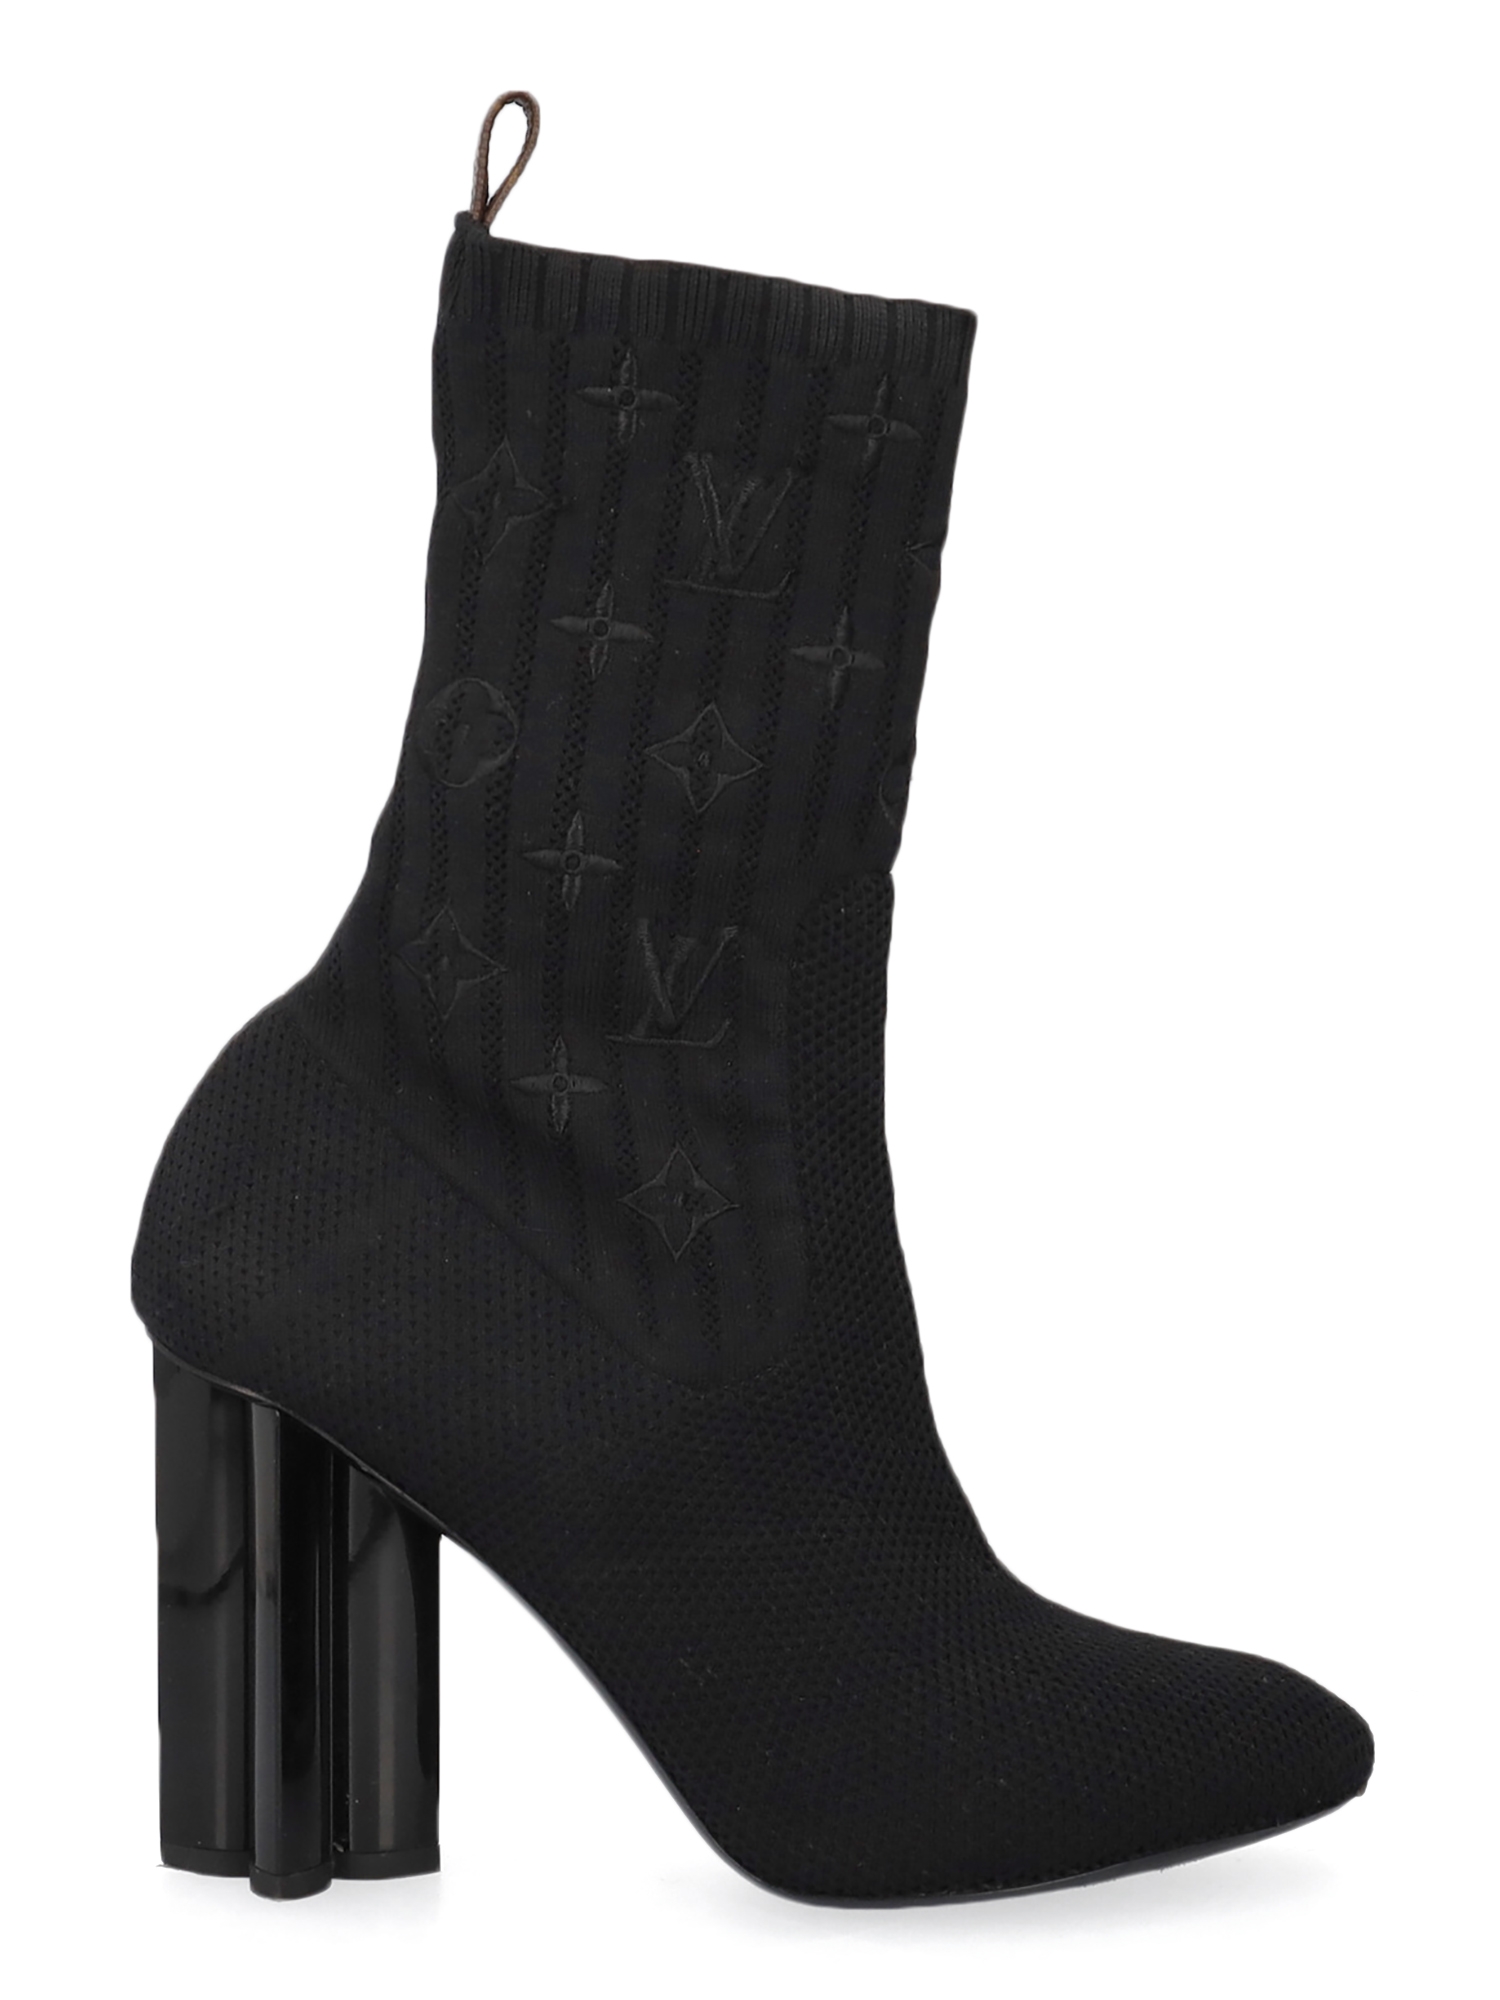 Giày Cao Gót Louis Vuitton Silhouette Ankle Boots Black 1A855C  Hệ thống  phân phối Air Jordan chính hãng